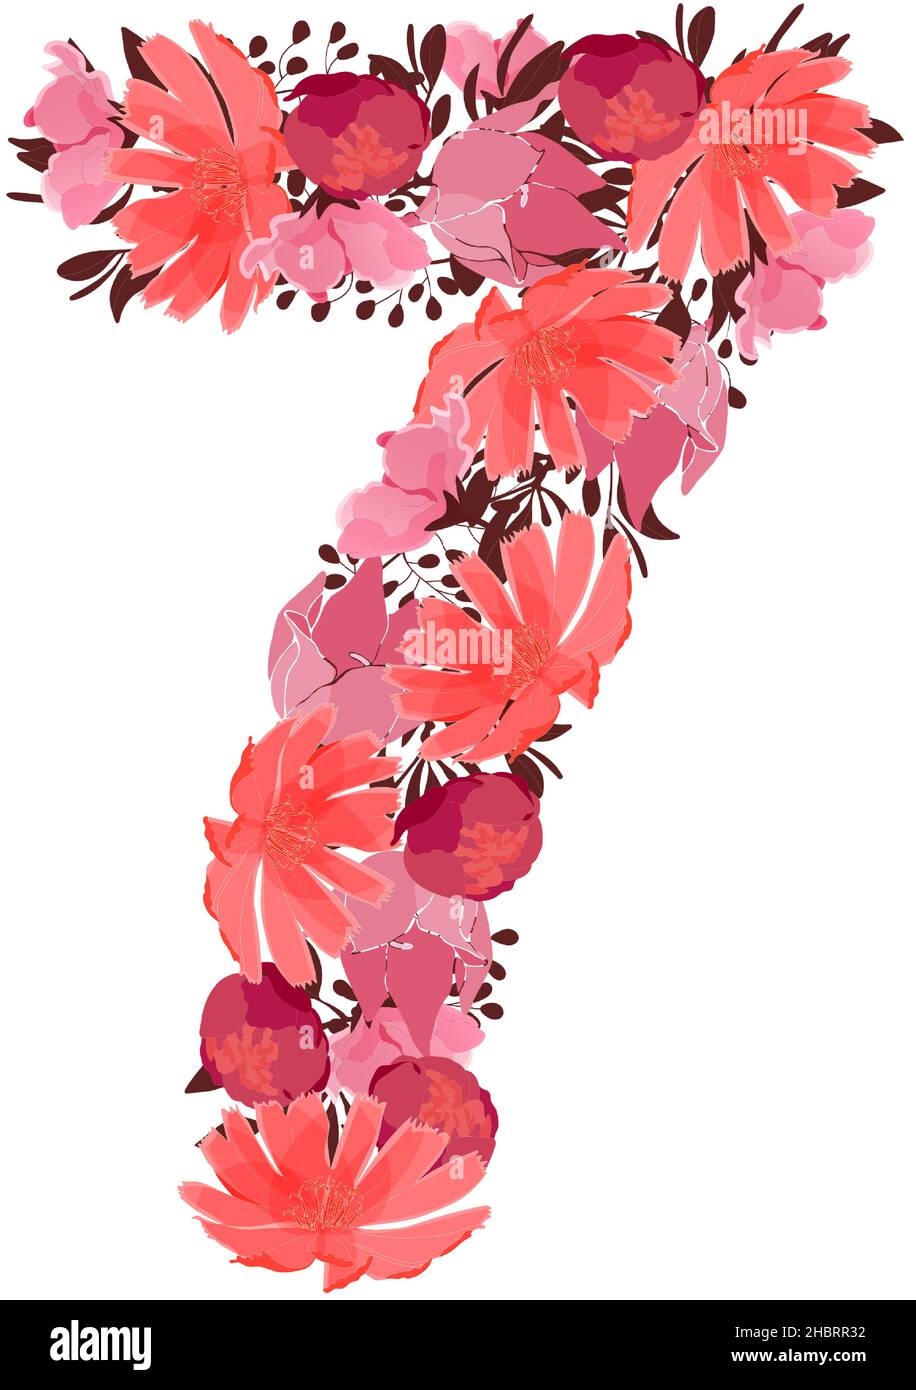 Vektor Blume Nummer 7. Botanischer Charakter, Figur. Rosa, kastanienbraune, korallenfarbene Blüten. Stock Vektor